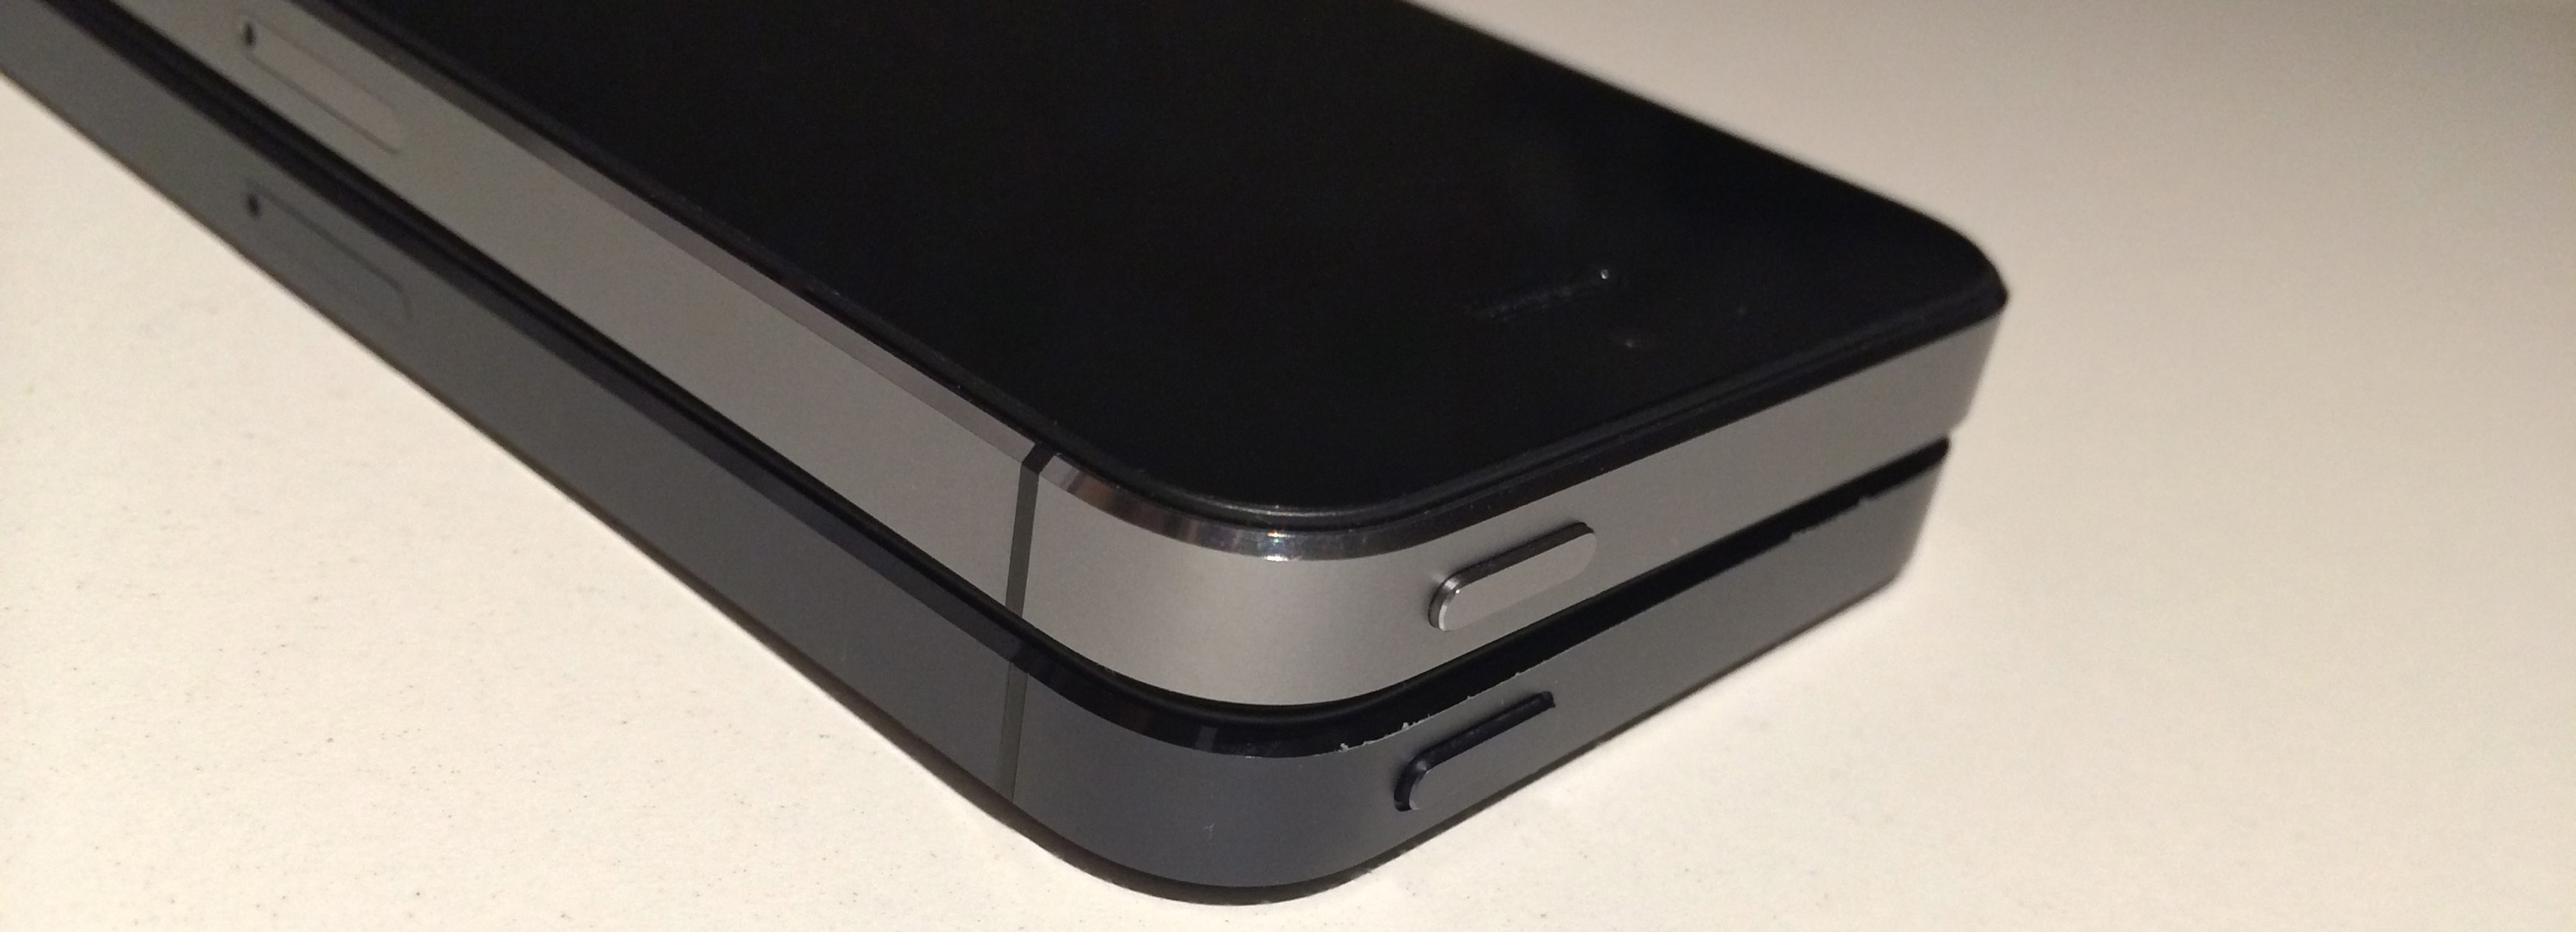 Iphone 5sスペースグレー Iphone 5ブラック スレート比較フォトレビュー ガジェットショット